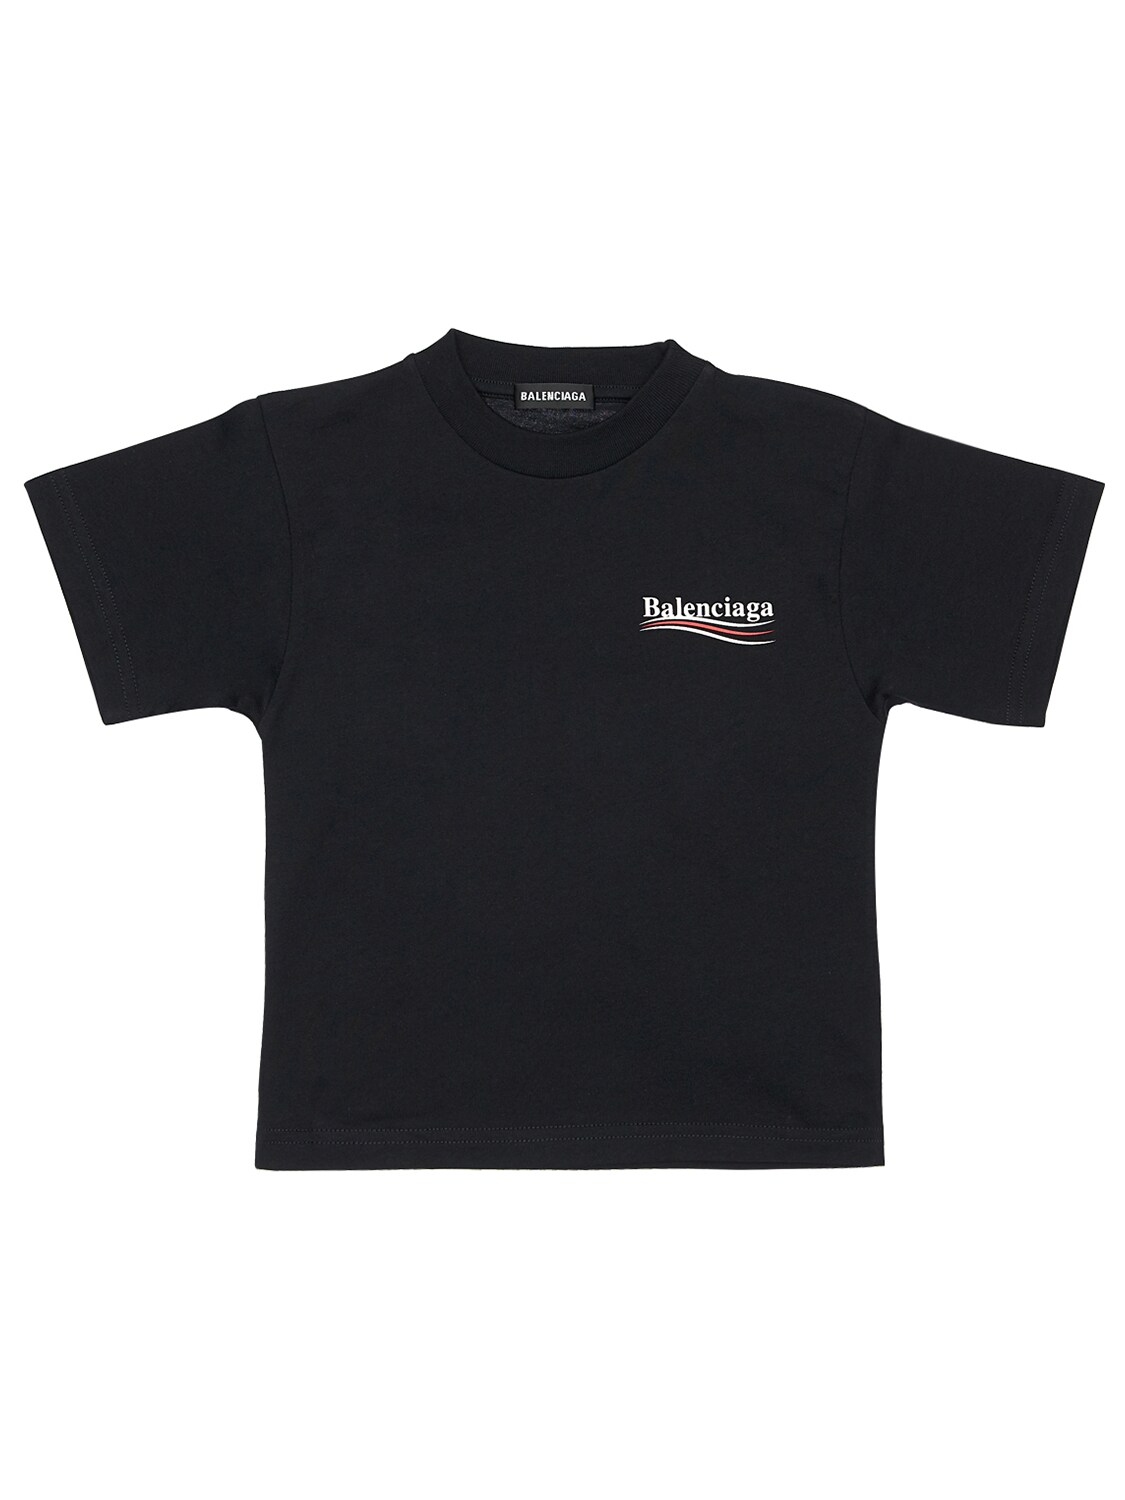 Balenciaga Kids' Logo Print Cotton Jersey T-shirt In Black,white